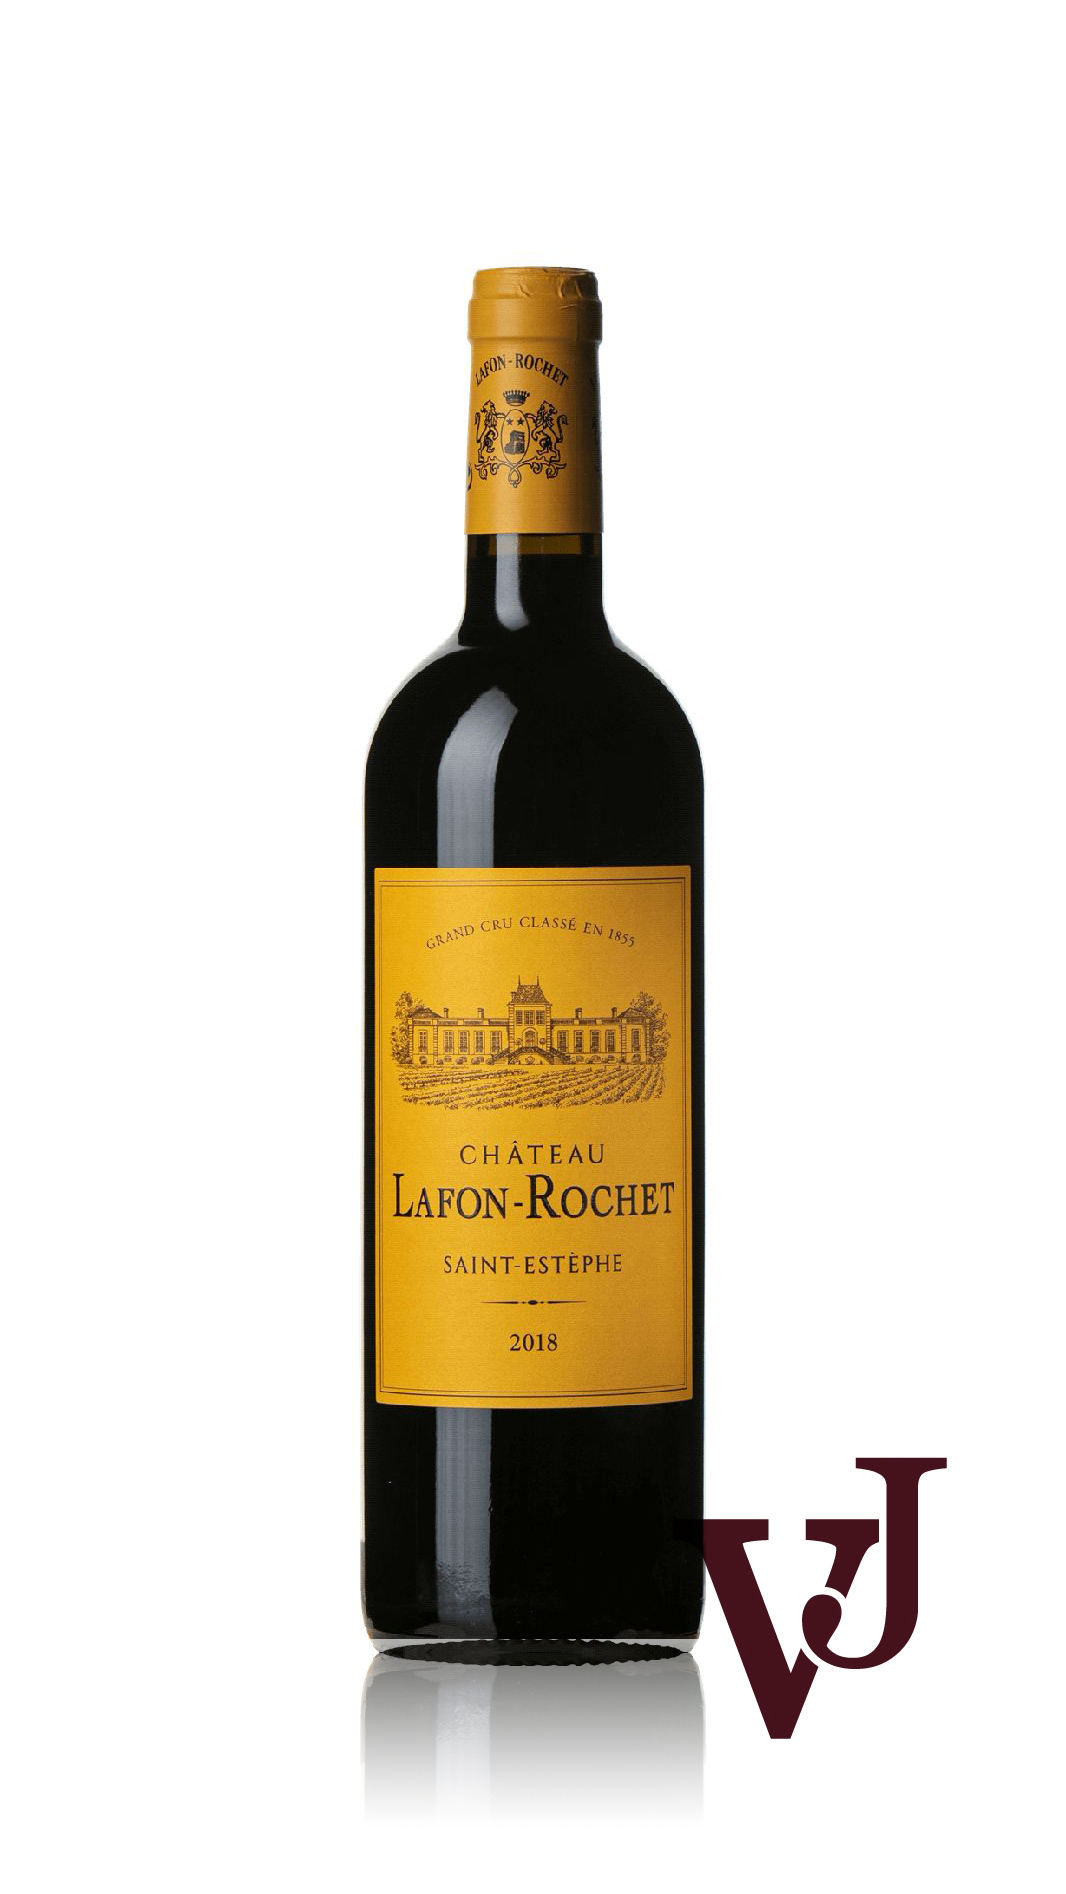 Rött Vin - Château Lafon-Rochet artikel nummer 9492201 från producenten Château Lafon-Rochet från området Frankrike